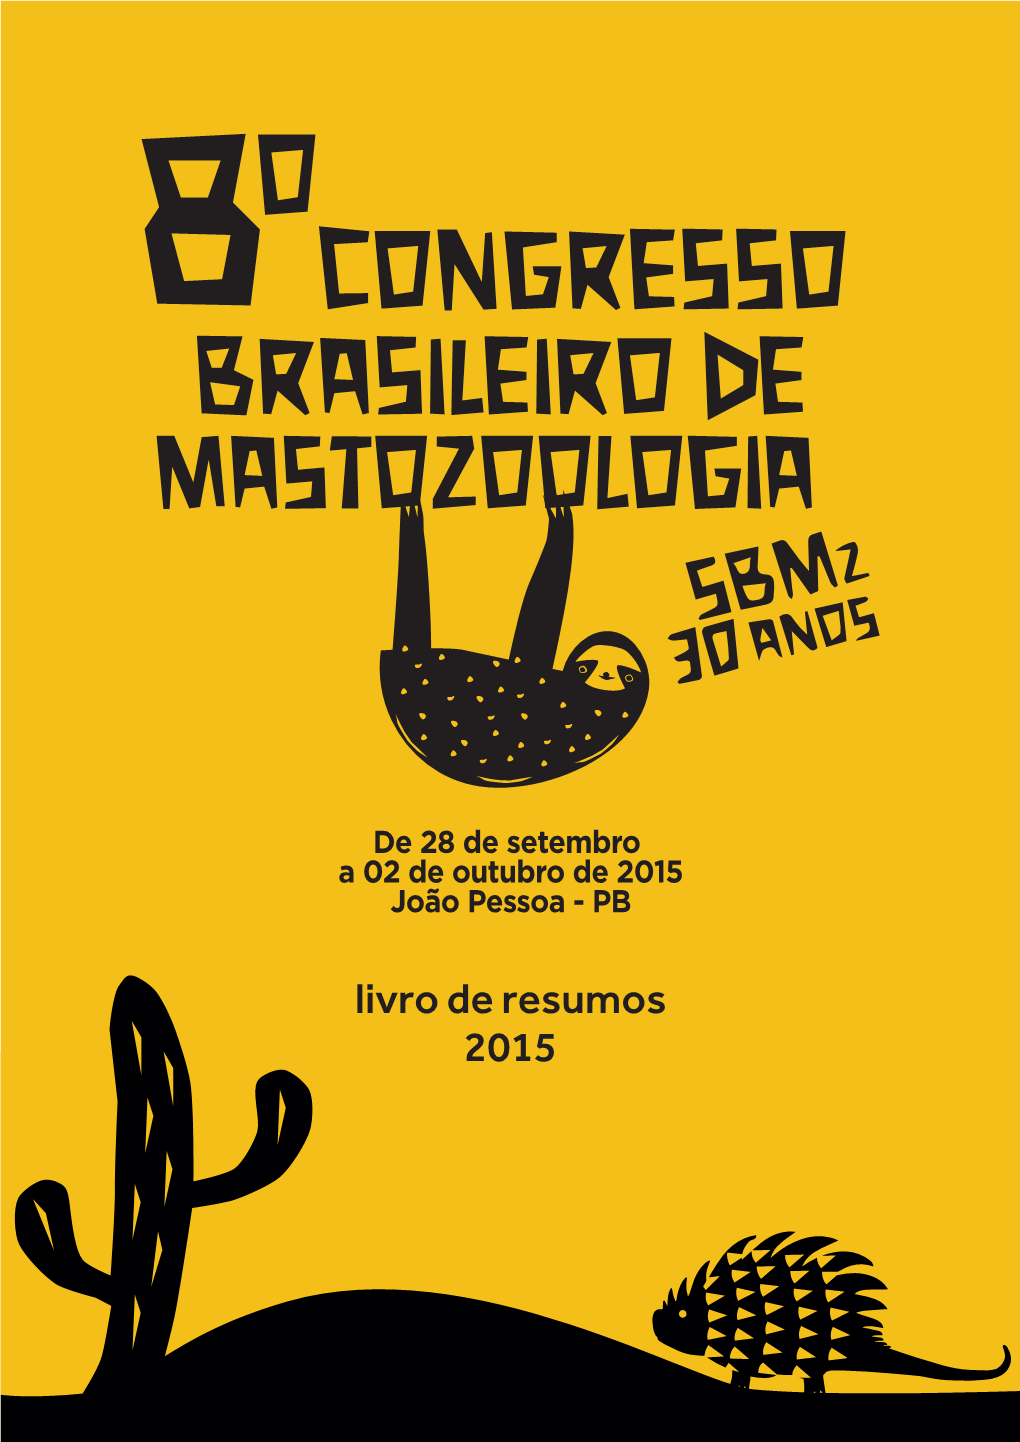 8º Congresso Brasileiro De Mastozoologia No Estado Da Paraíba Vem Comemorar O Sucesso Destes 30 Anos Da Sbmz E O Notável Crescimento Da Mastozoologia No País